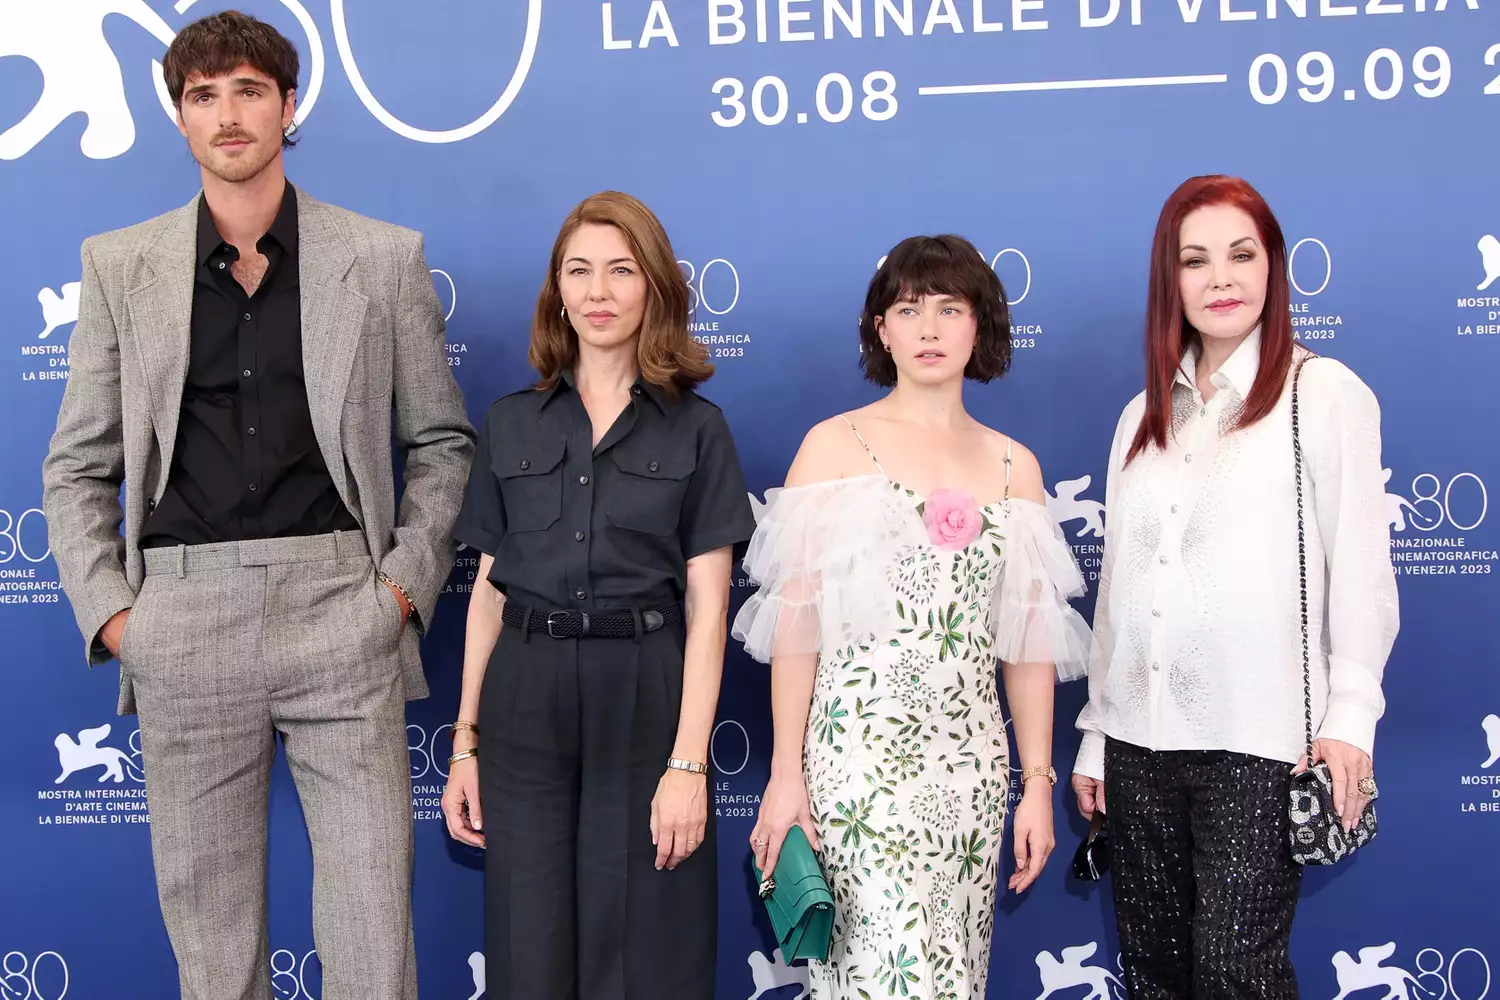 Priscilla Presley (bìa phải) cùng đạo diễn Sofia Coppola (thứ hai từ trái qua) và hai diễn viên chính trong buổi ra mắt phim Priscilla ở Liên hoan phim Venice 2023, hôm 4/9. Ảnh: WireImage